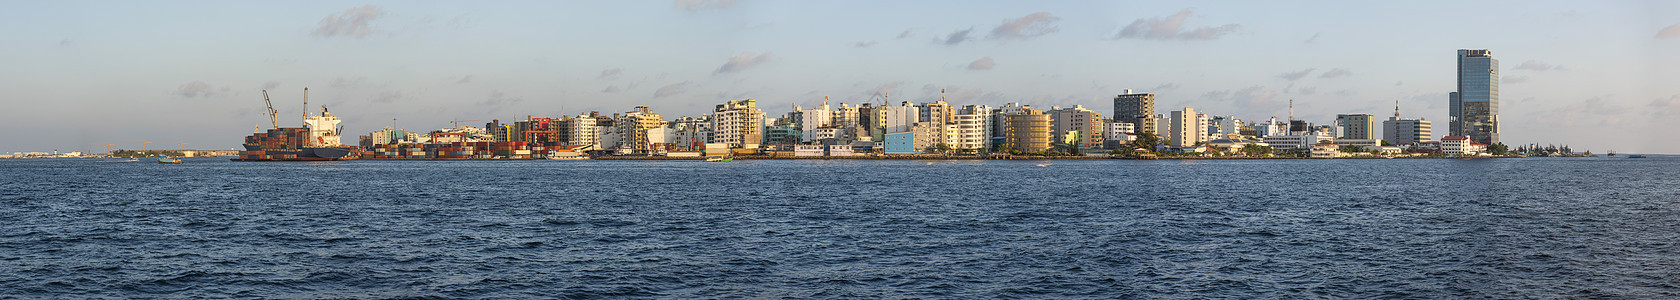 马尔代夫大型岛屿城市马累大岛市的全景三角帆商业天空塔楼集装箱海运货船上层建筑工业海岸图片